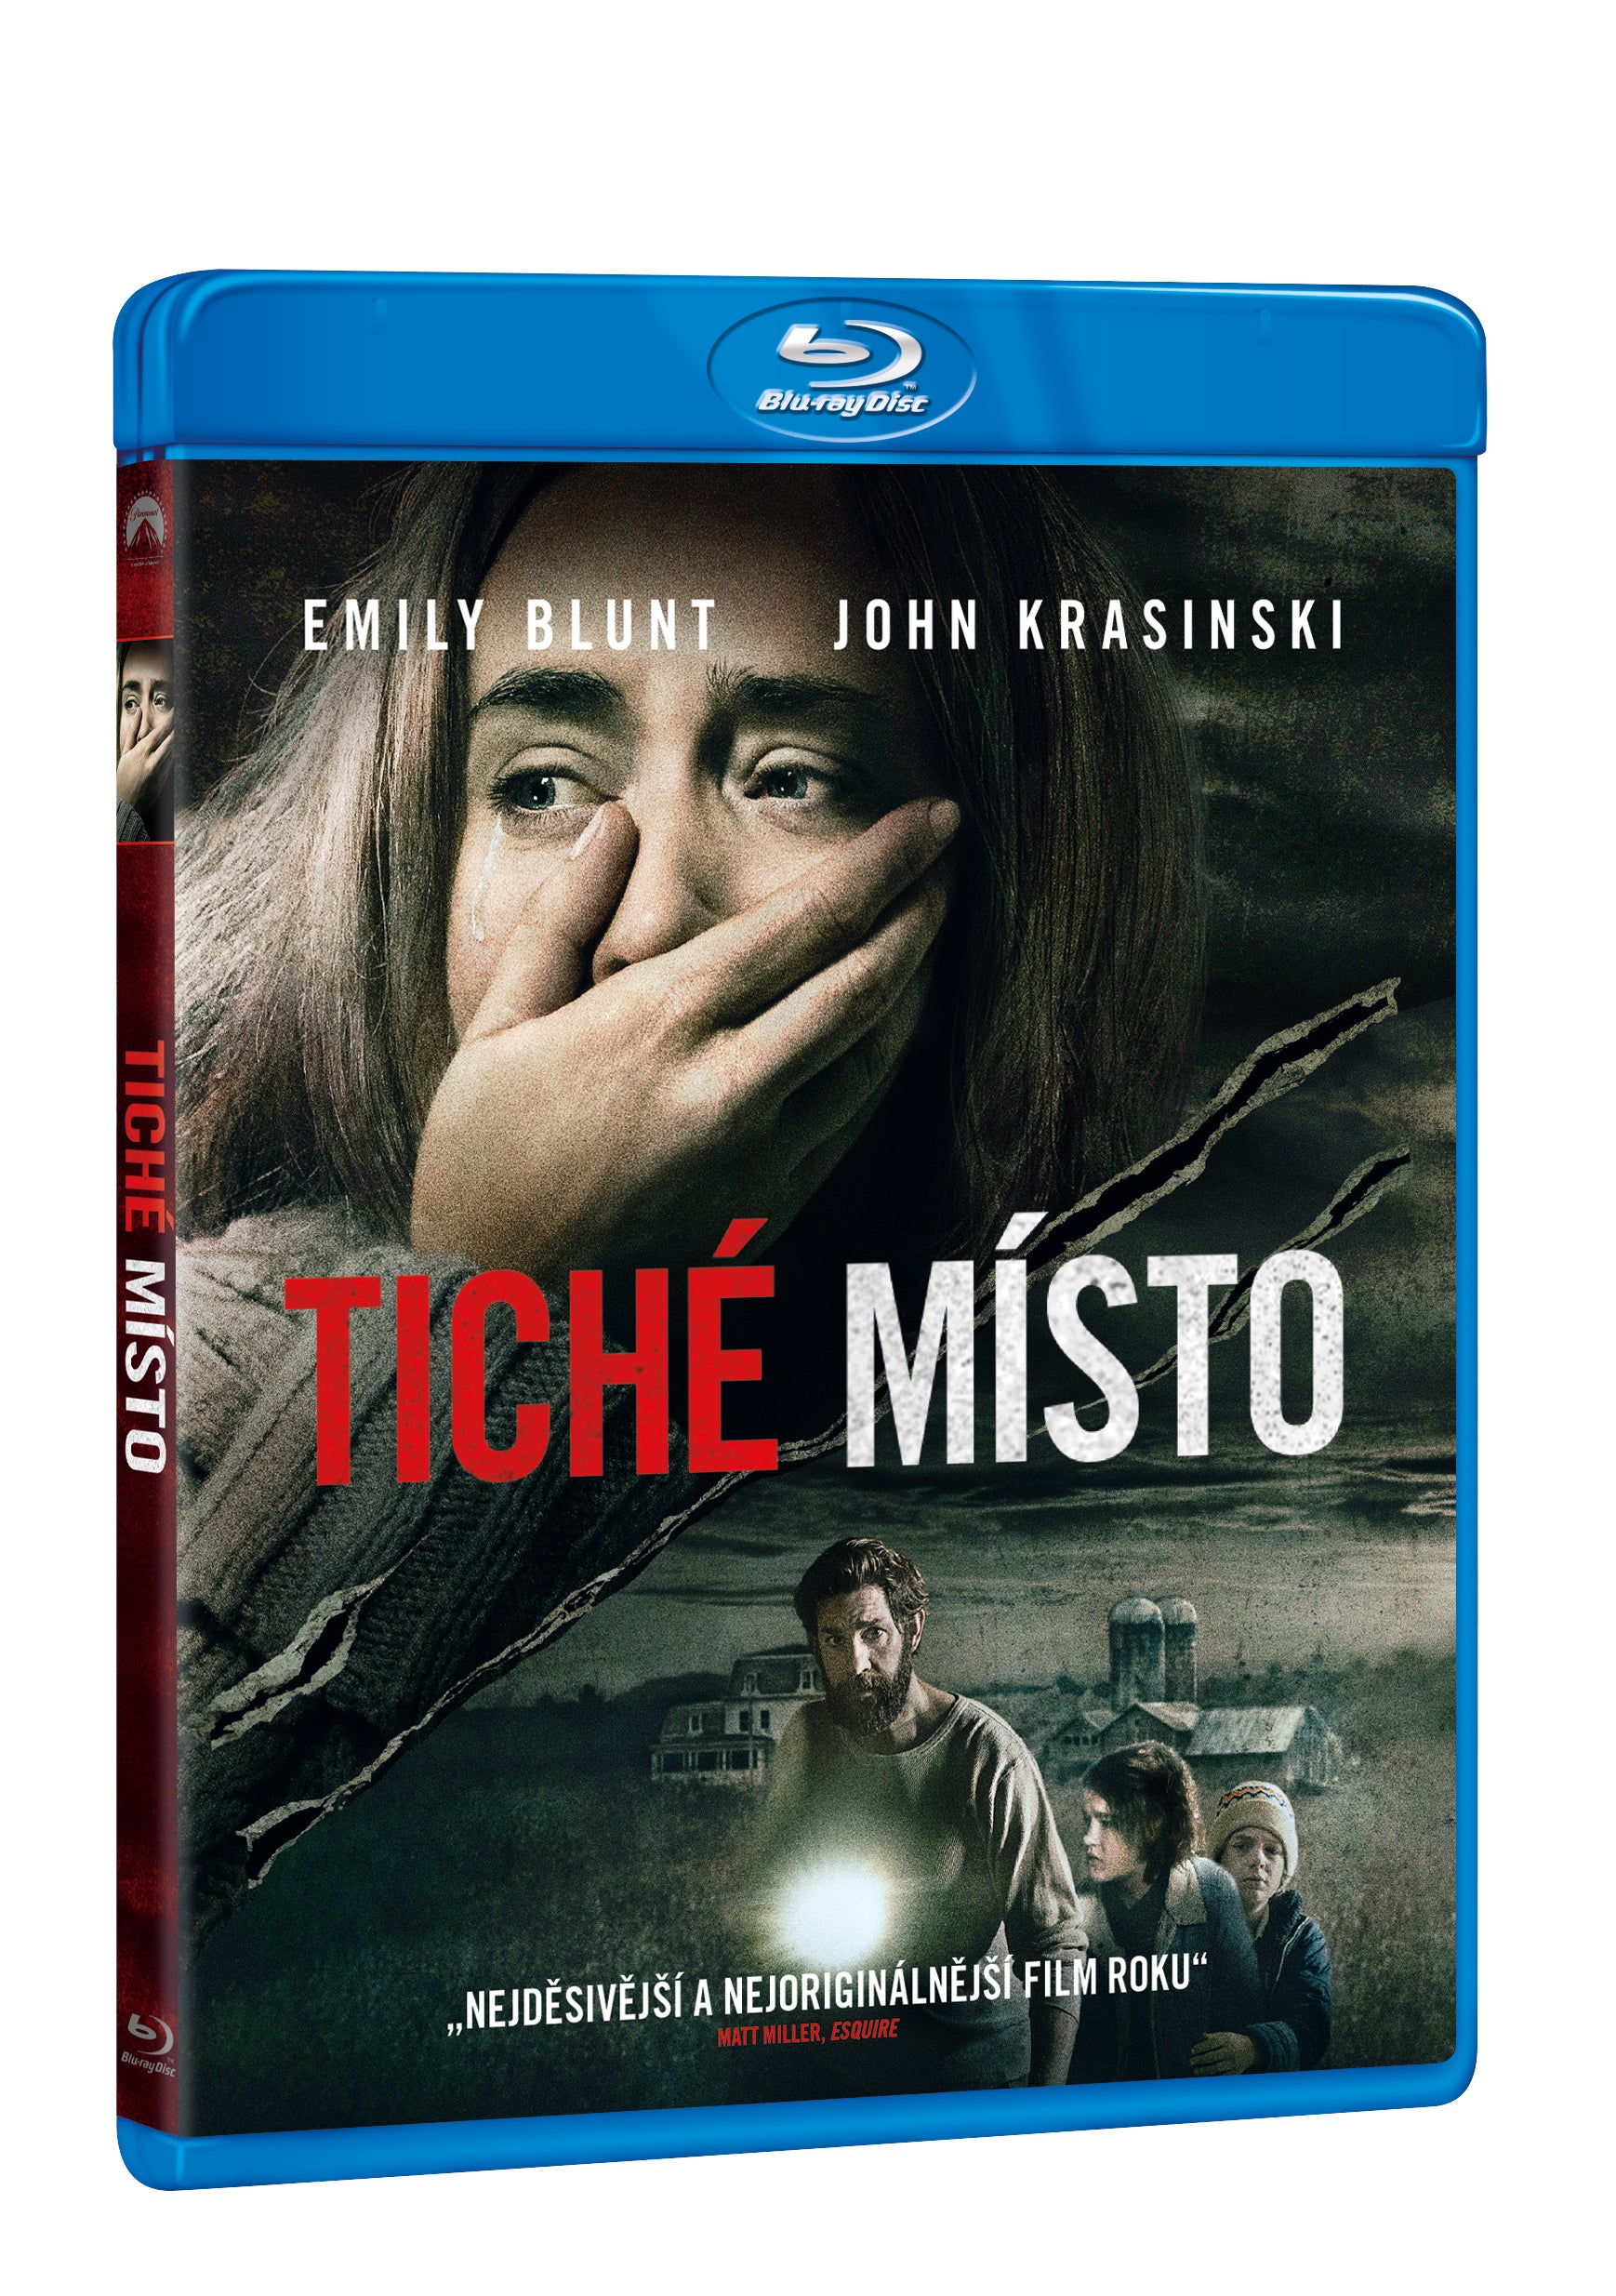 Tiche misto BD / A Quiet Place - Czech version